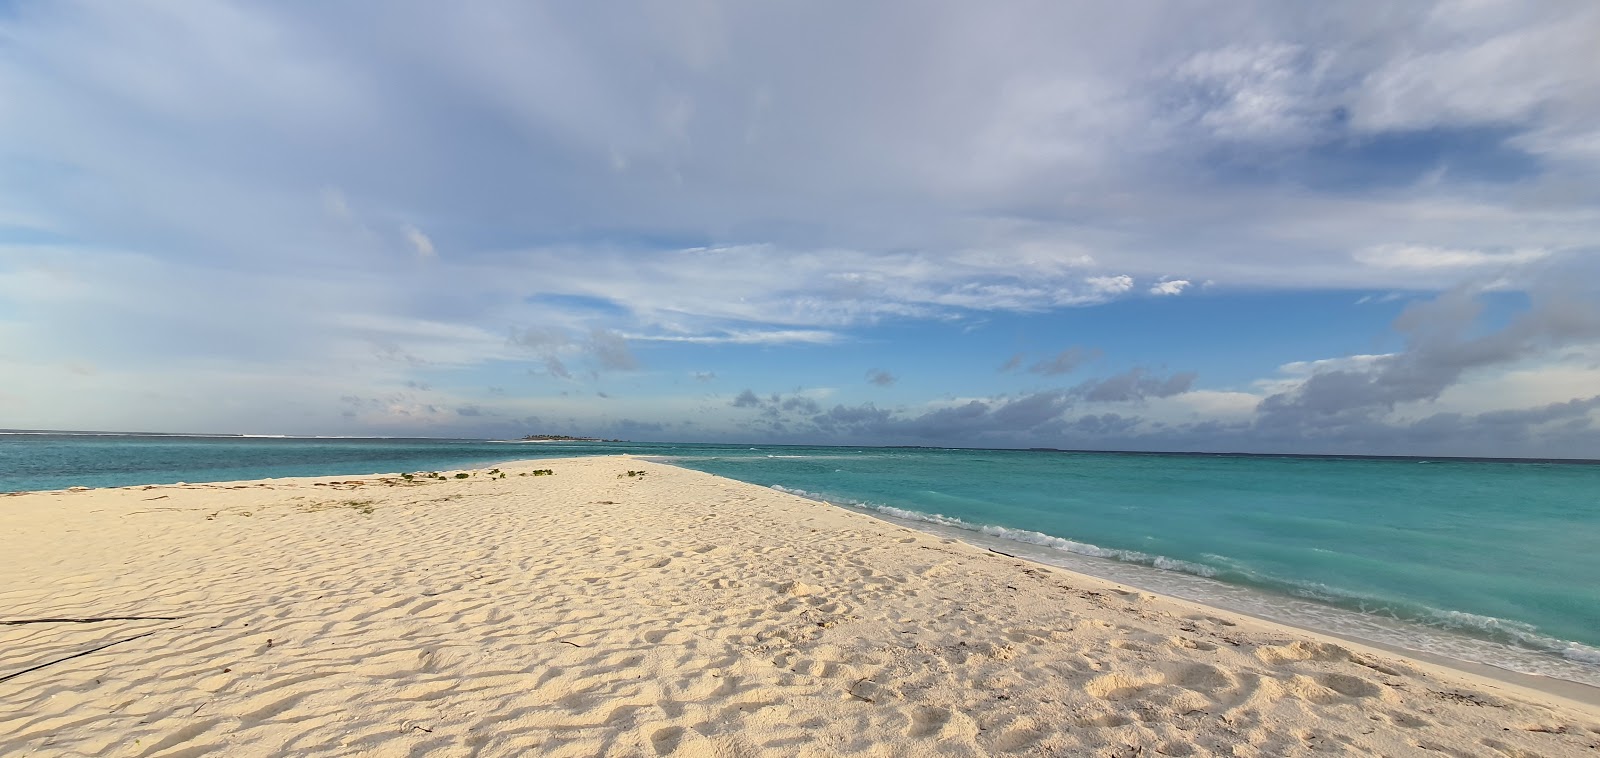 Fotografija Fenfushee Island nahaja se v naravnem okolju